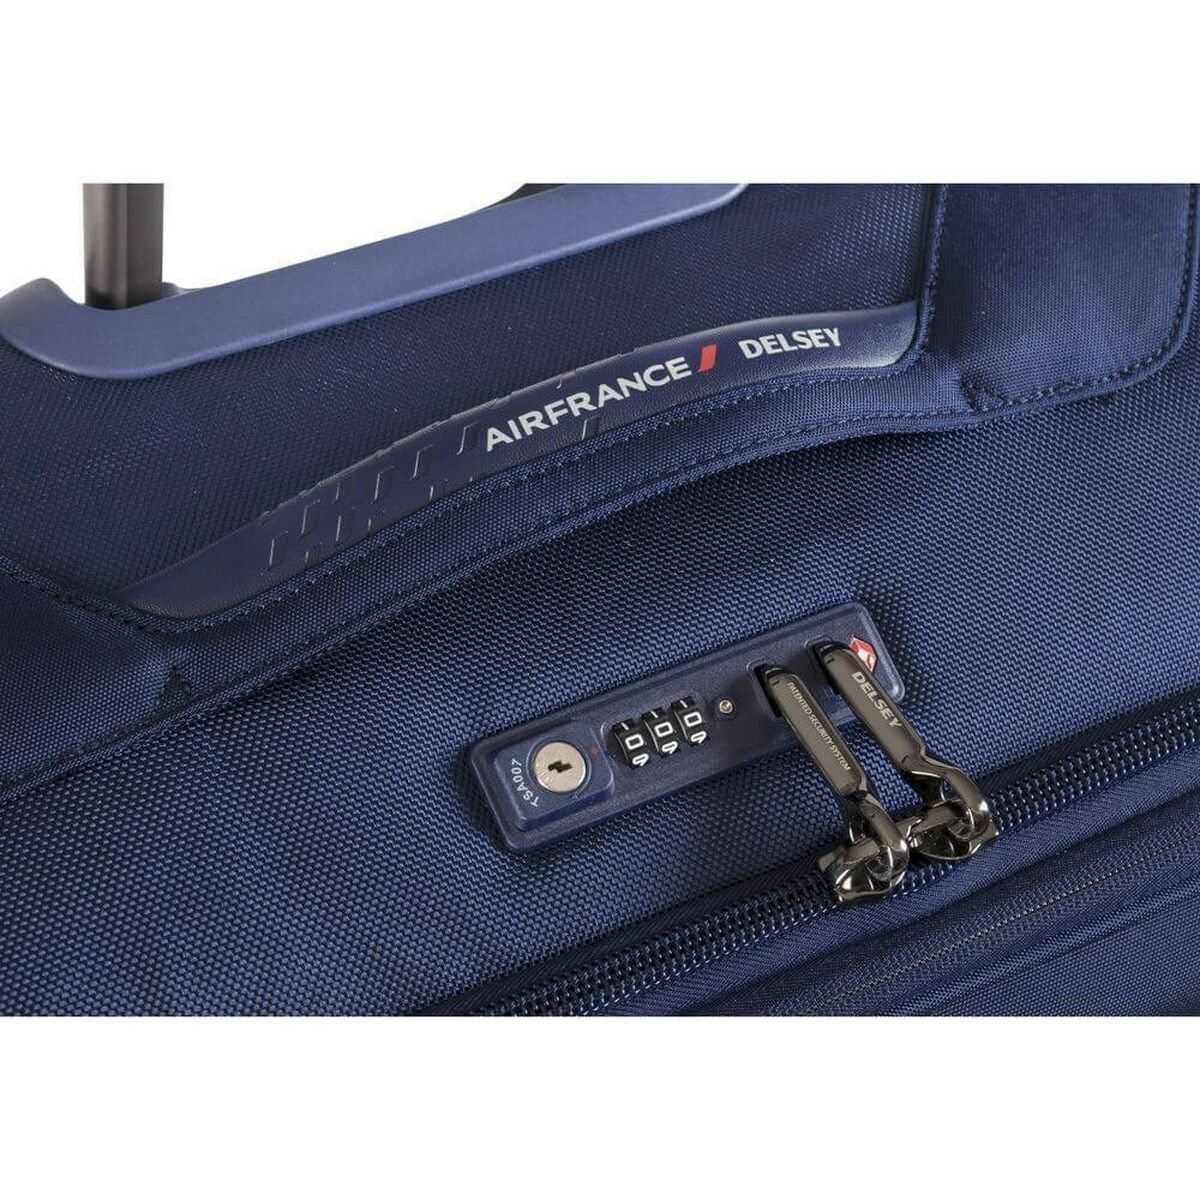 Koffer groß Delsey New Destination 75 cm Blau